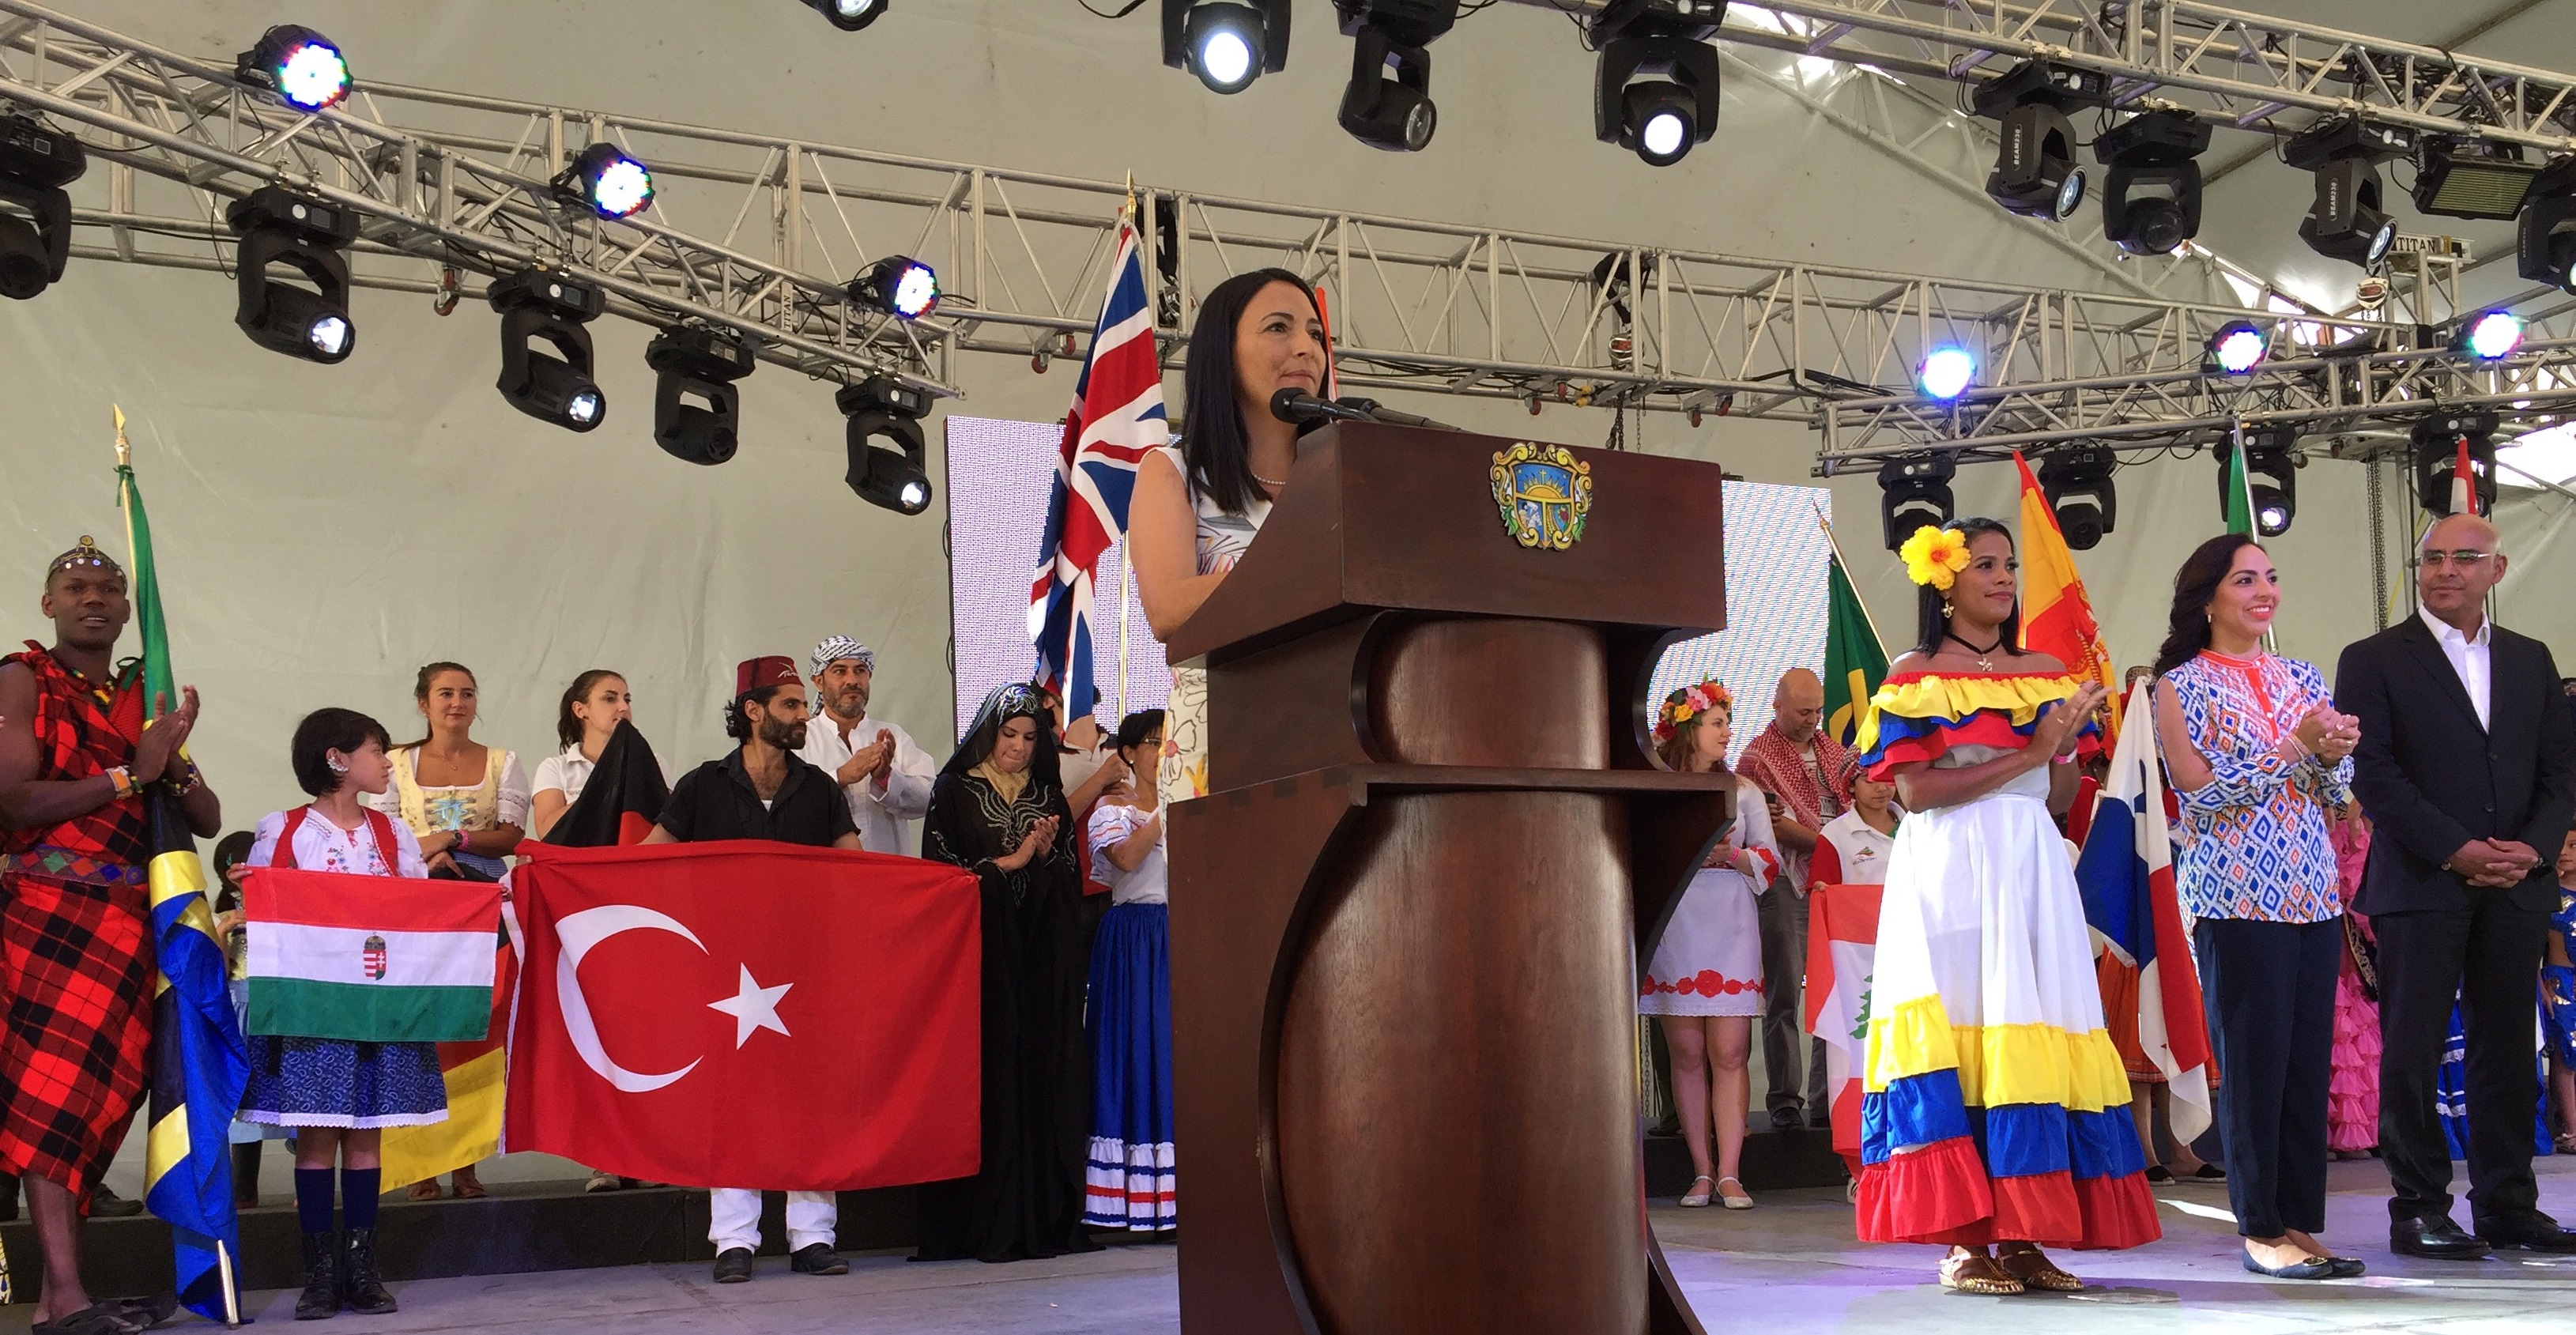  Festival de Comunidades Extranjeras, muestra del entendimiento mutuo: Esther Carboney